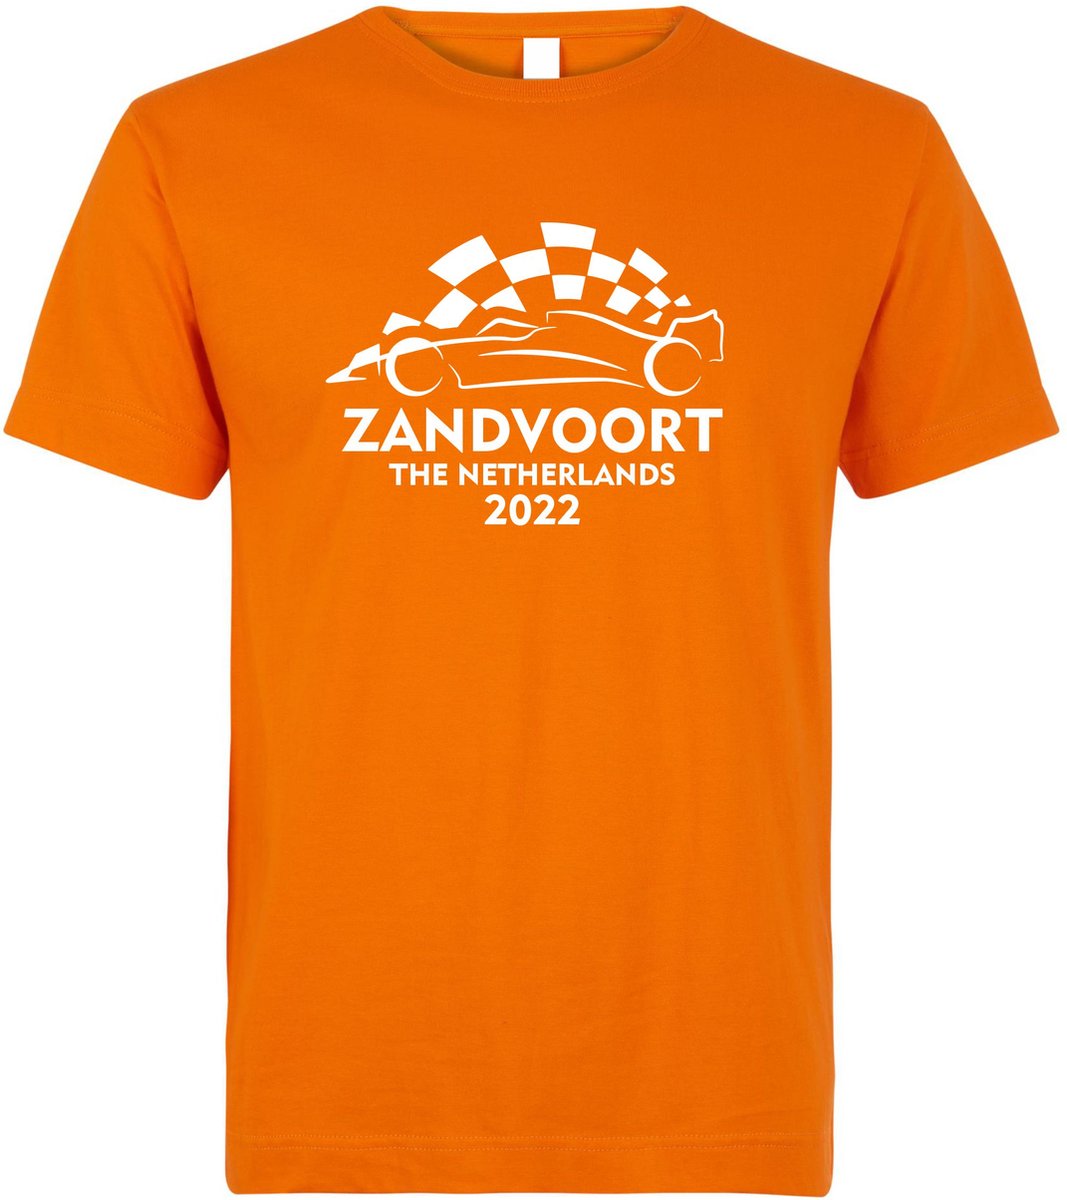 T-shirt kinderen Zandvoort 2022 met raceauto | Max Verstappen / Red Bull Racing / Formule 1 fan | Grand Prix Circuit Zandvoort | kleding shirt | Oranje | maat 152